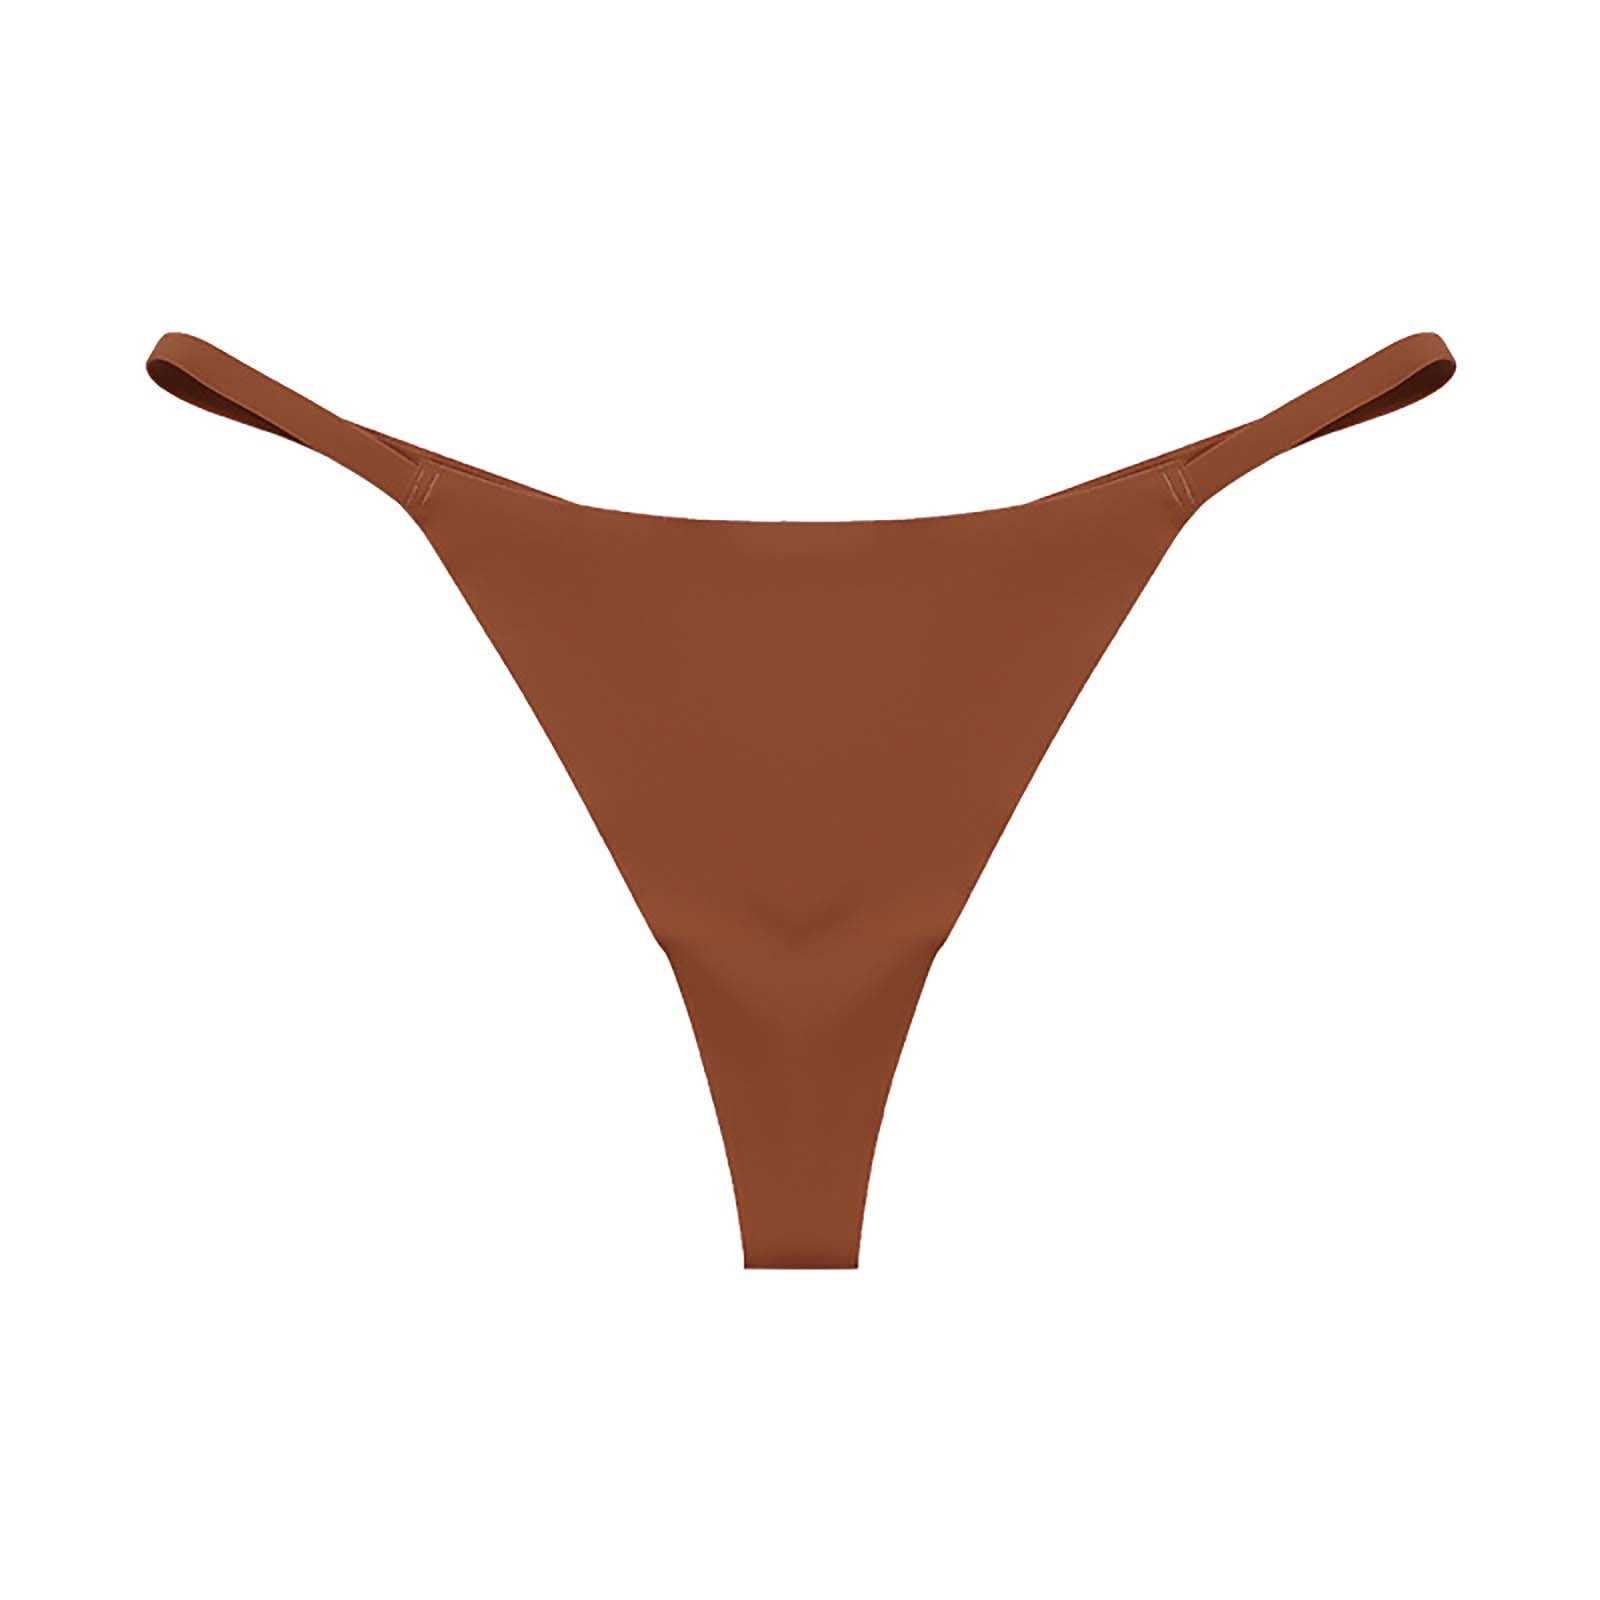 Efsteb Panties for Women Cotton Underwear Lingerie Underwear